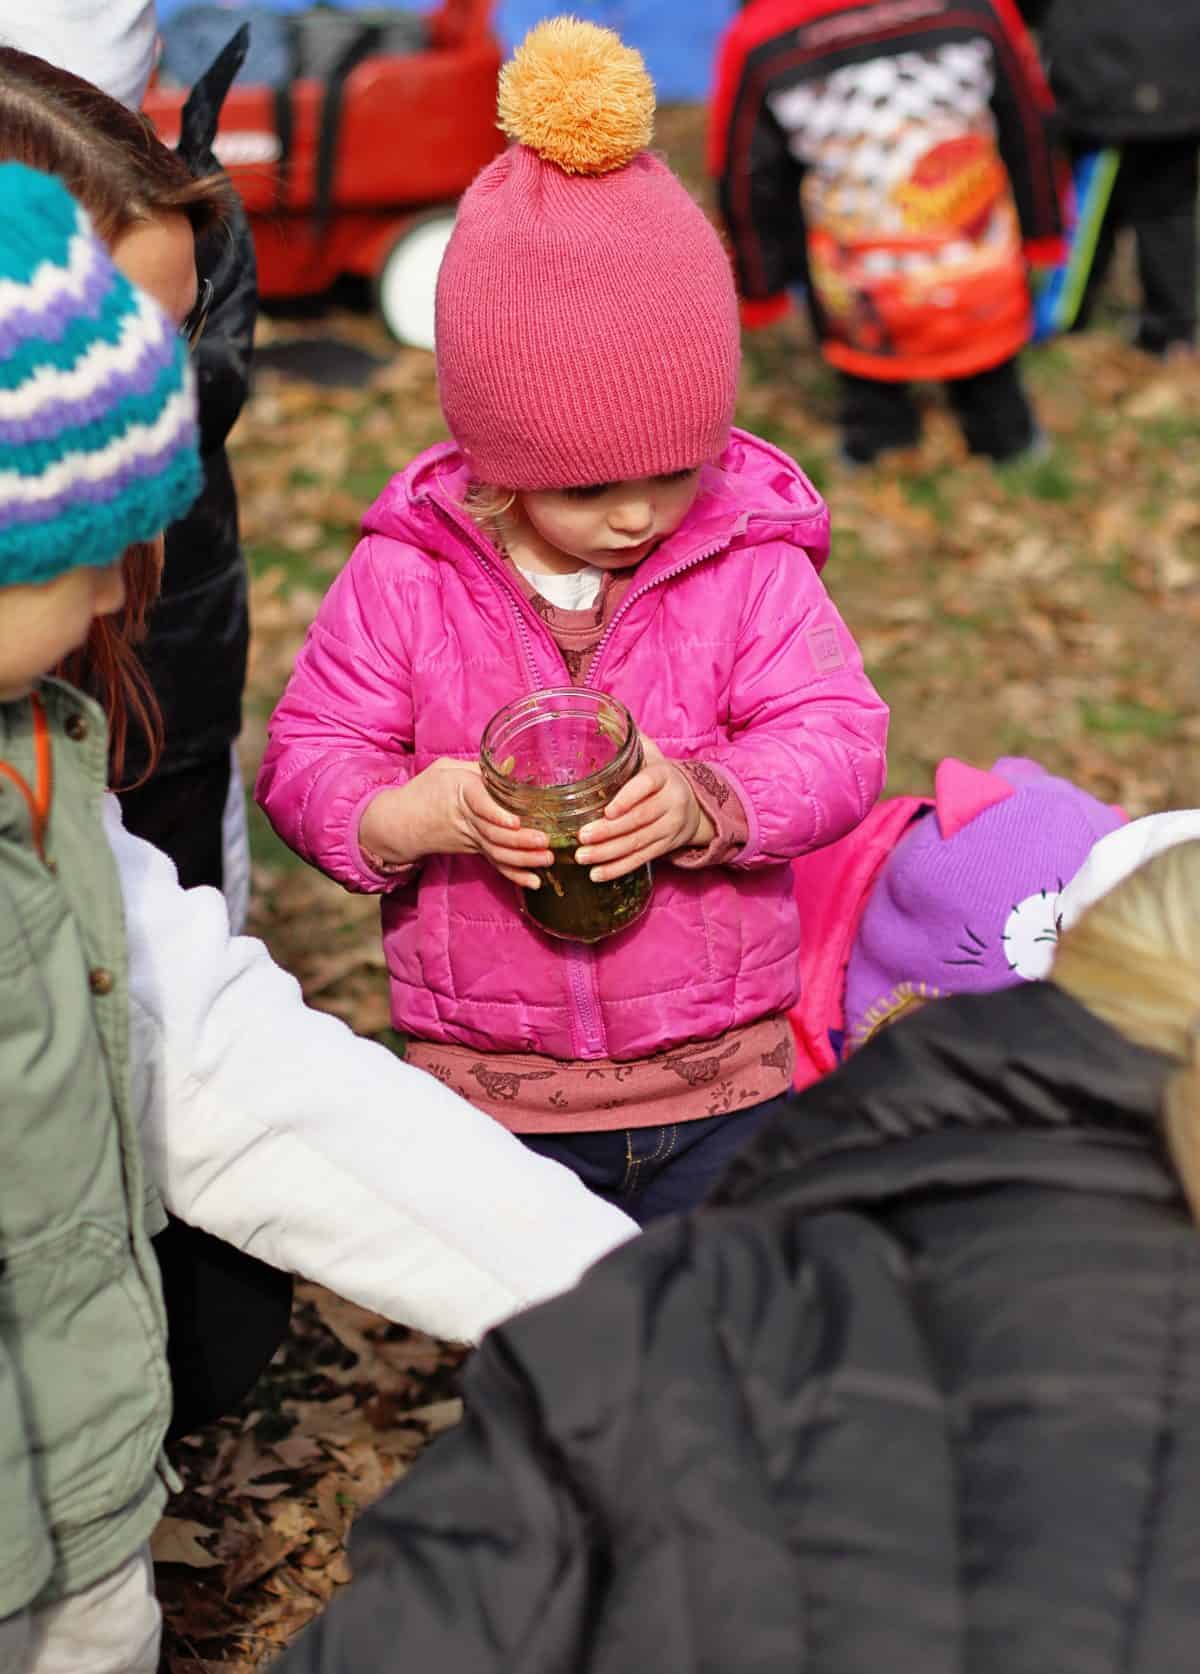 tinkergarten activities for little kids